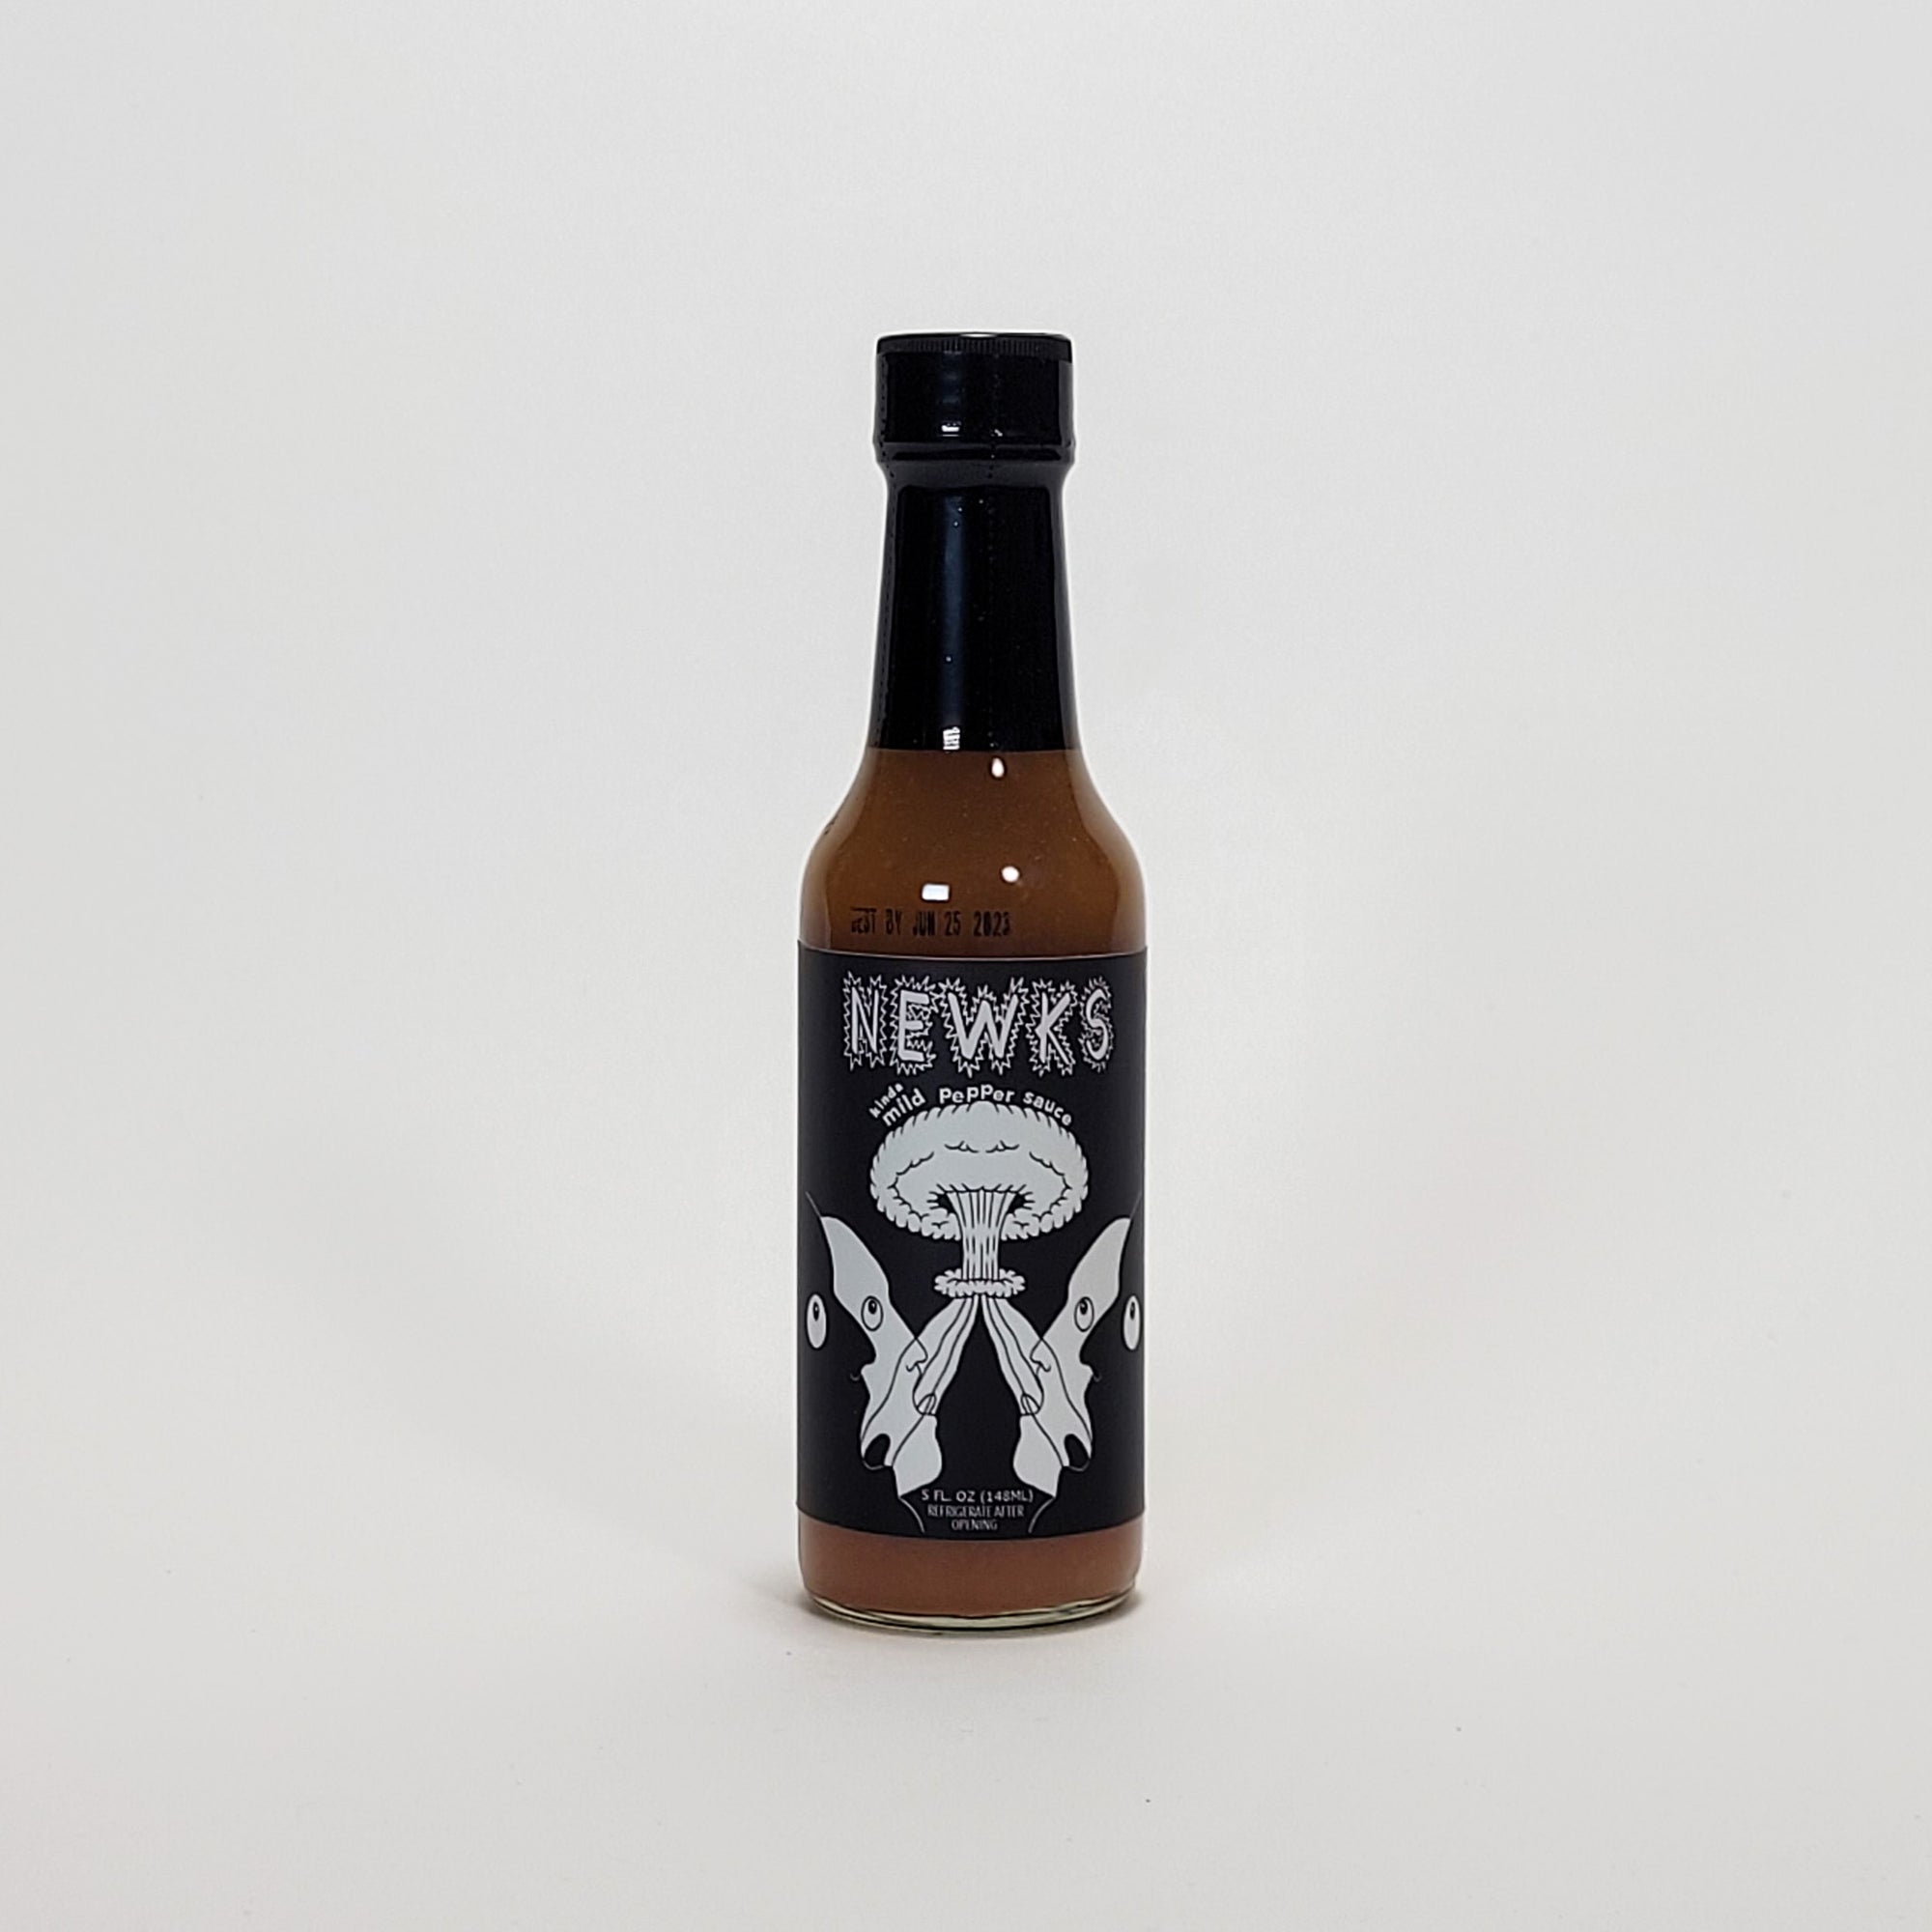 Newks Mild Pepper Sauce hot sauce